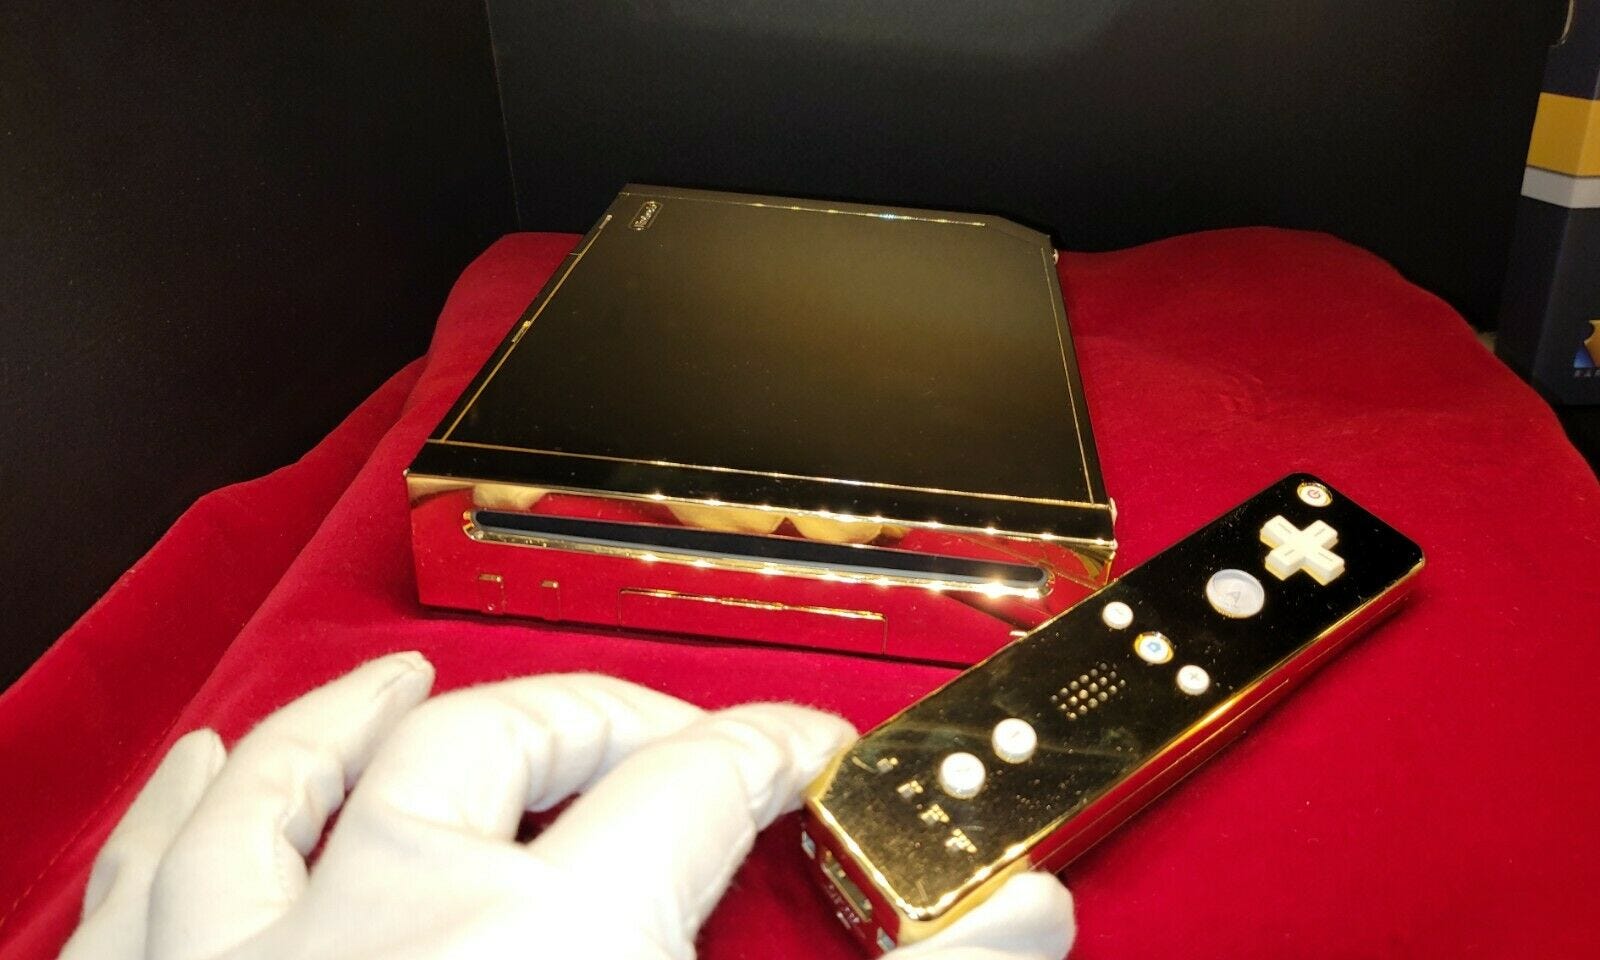 The 24-Karat gold Nintendo Wii made for Queen Elizabeth II